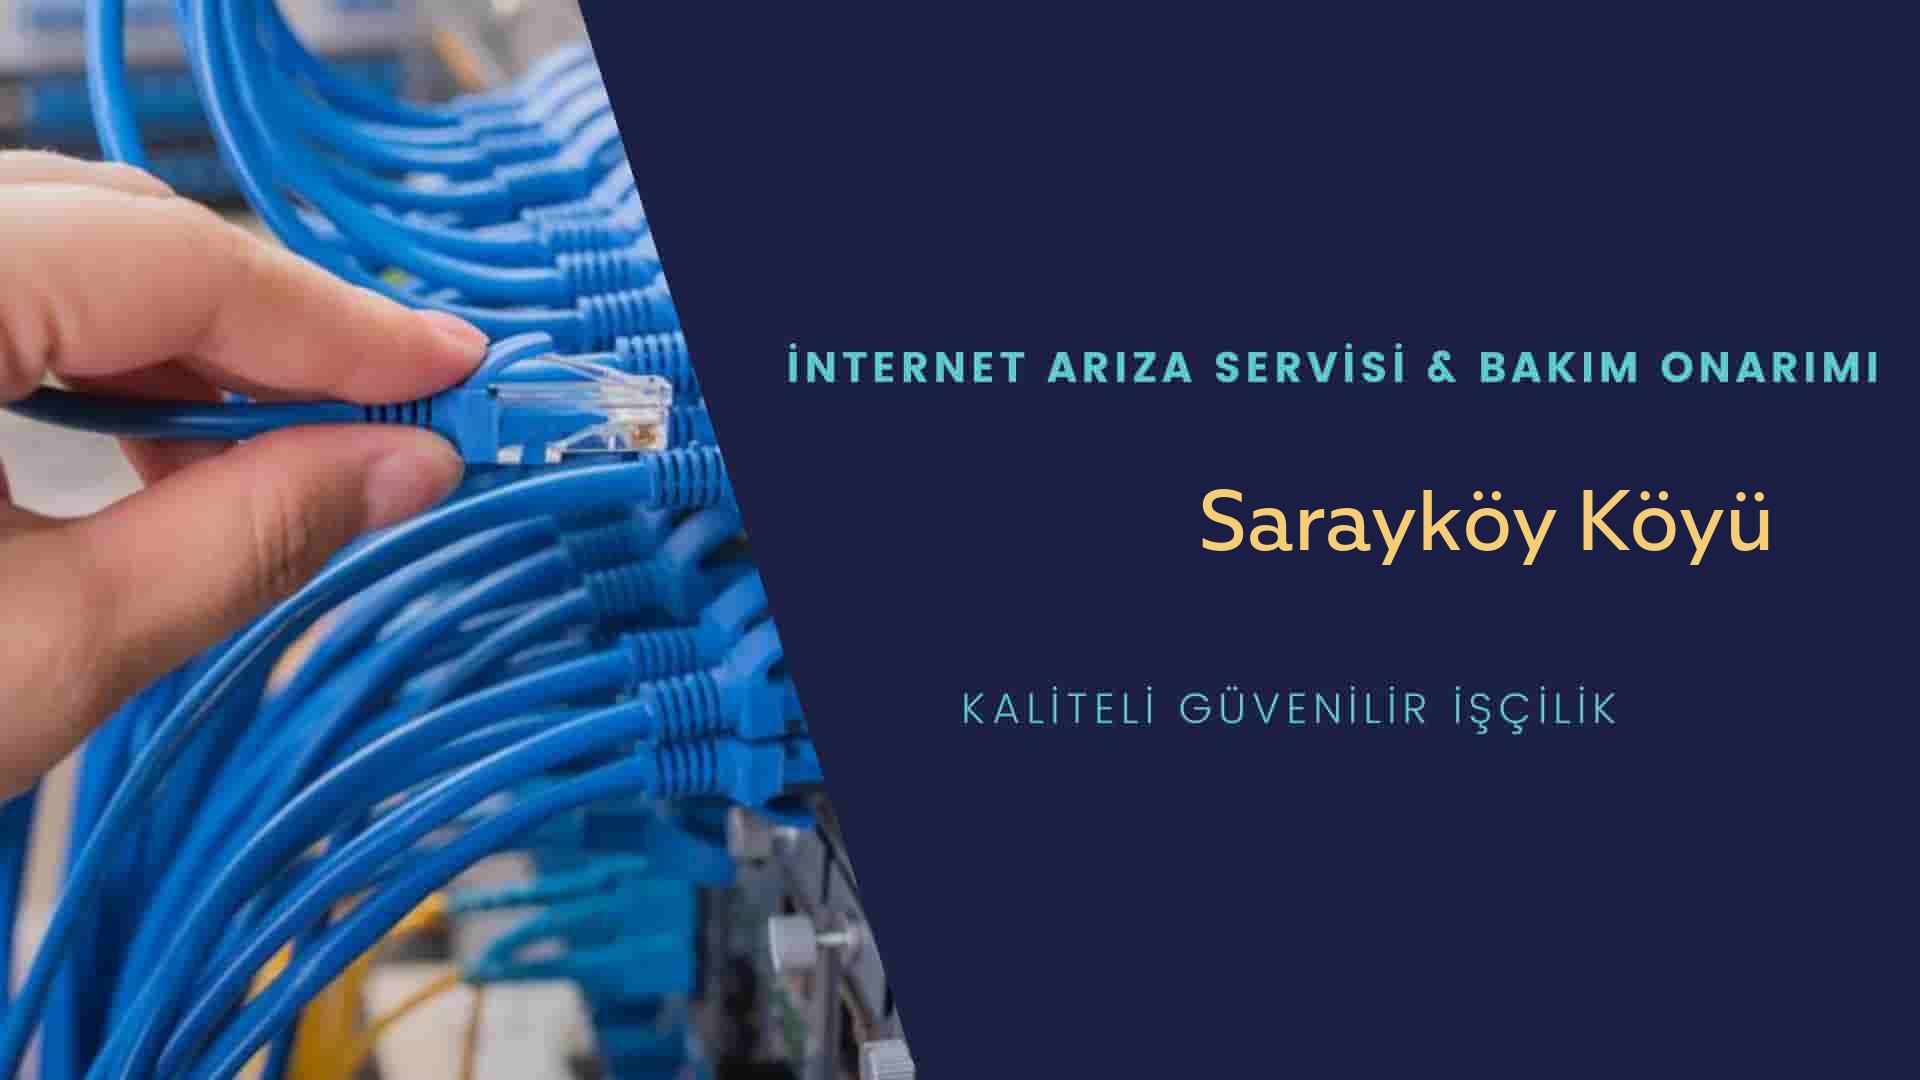 Sarayköy Köyü internet kablosu çekimi yapan yerler veya elektrikçiler mi? arıyorsunuz doğru yerdesiniz o zaman sizlere 7/24 yardımcı olacak profesyonel ustalarımız bir telefon kadar yakındır size.